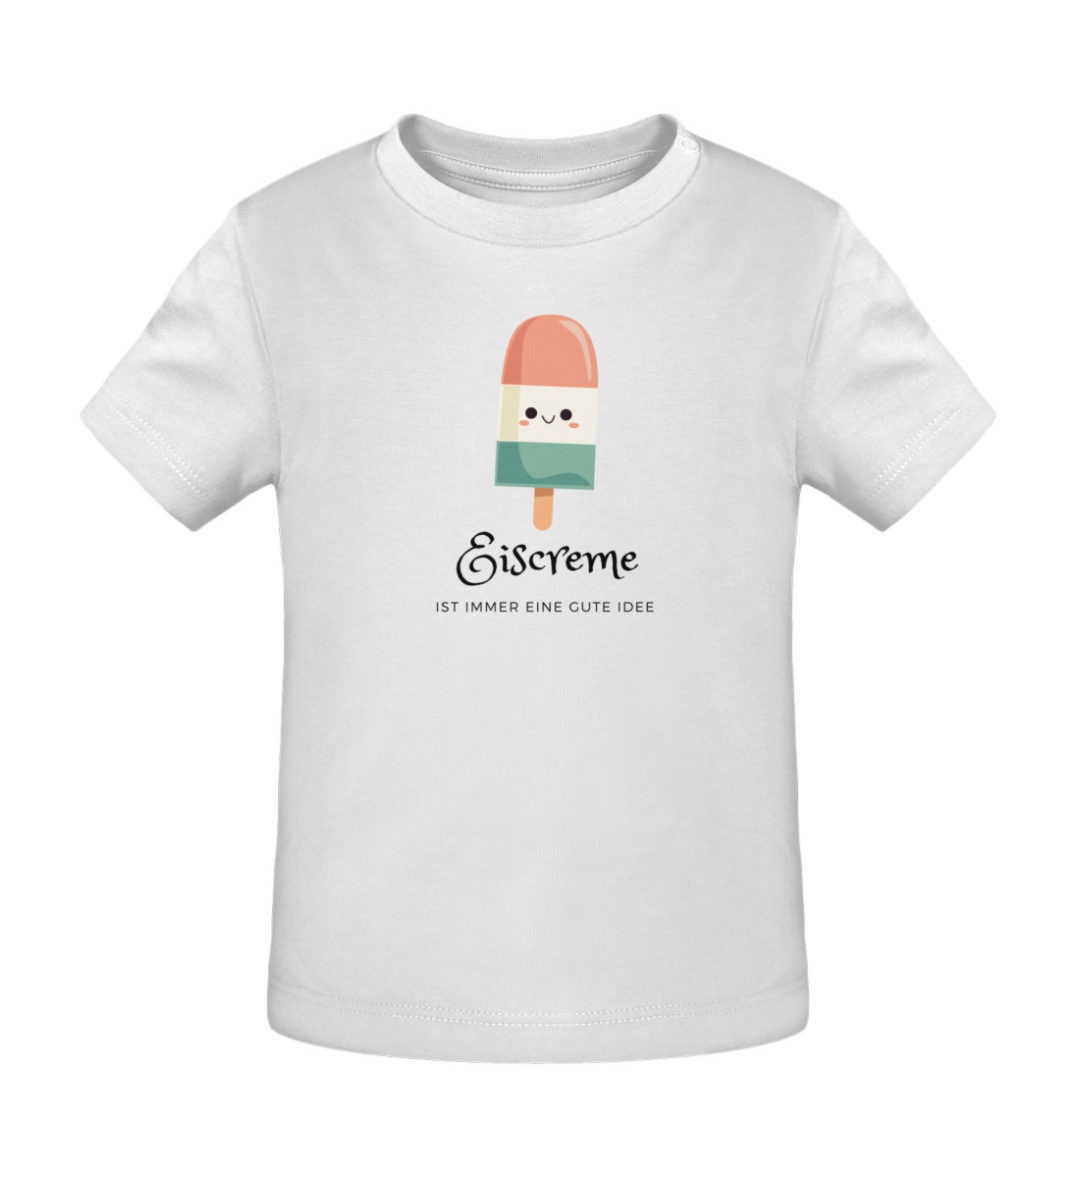 Eiscreme ist immer eine gute Idee - Baby Creator T-Shirt ST/ST-3